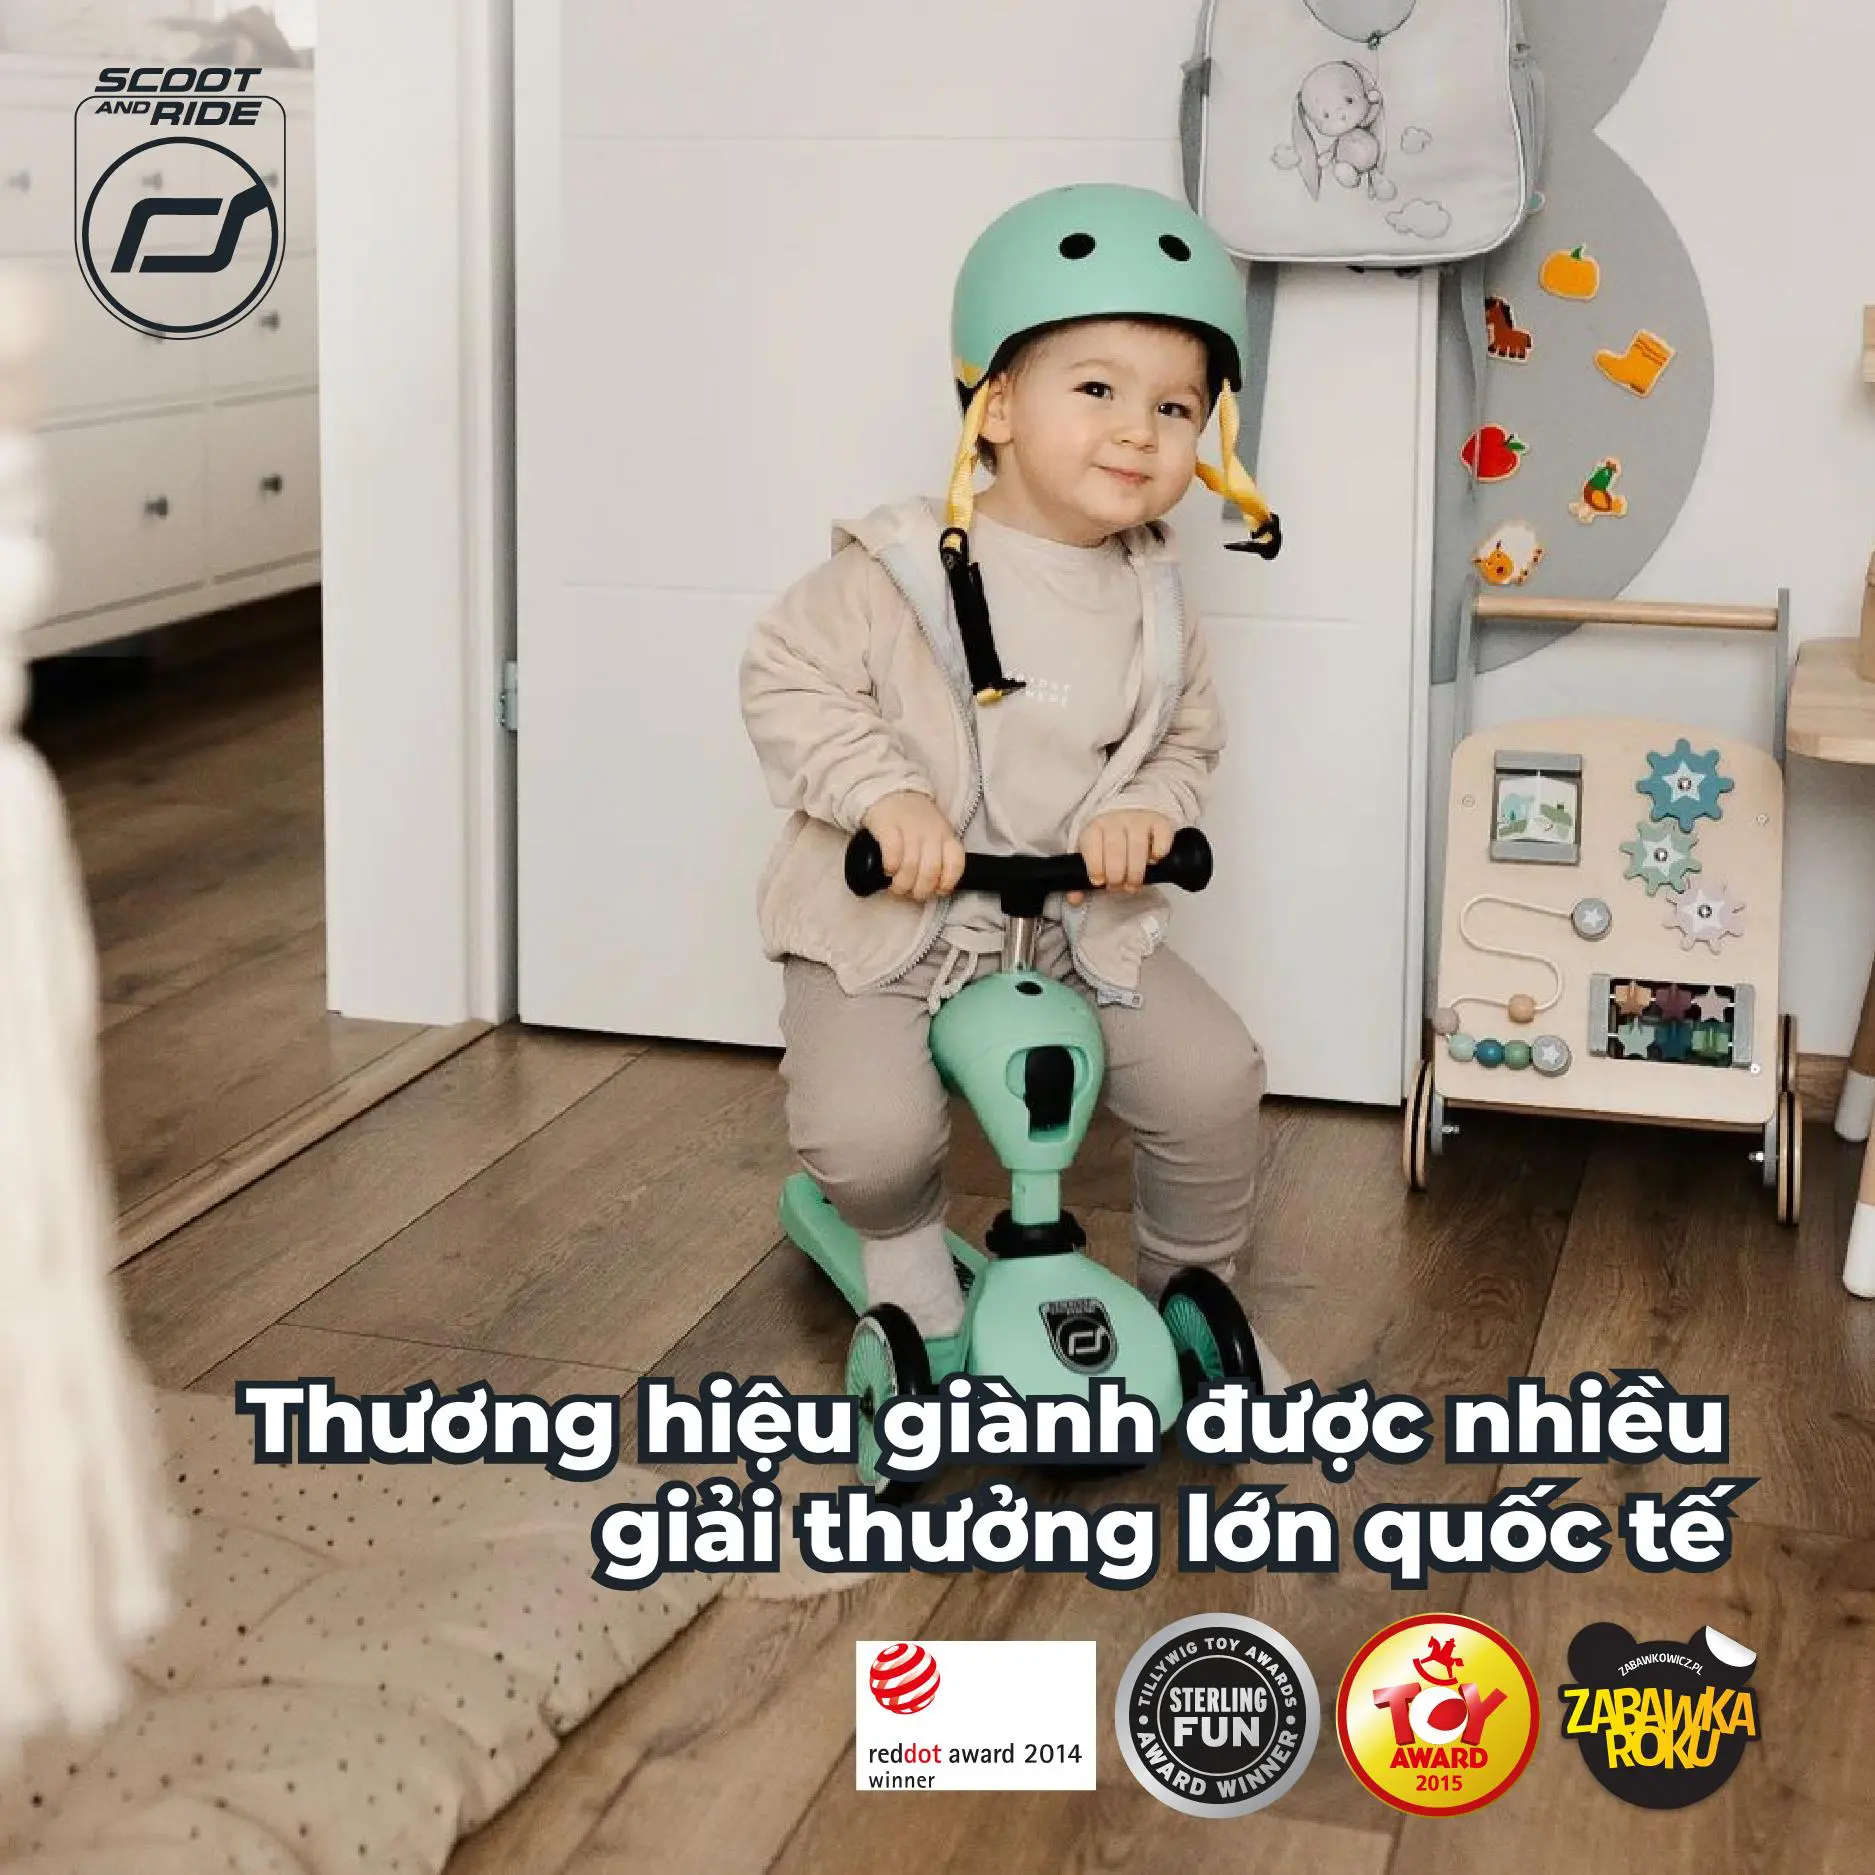 Scoot and Ride: Thương hiệu xe scooter cao cấp dành cho trẻ em chính thức ra mắt tại Việt Nam - Ảnh 4.